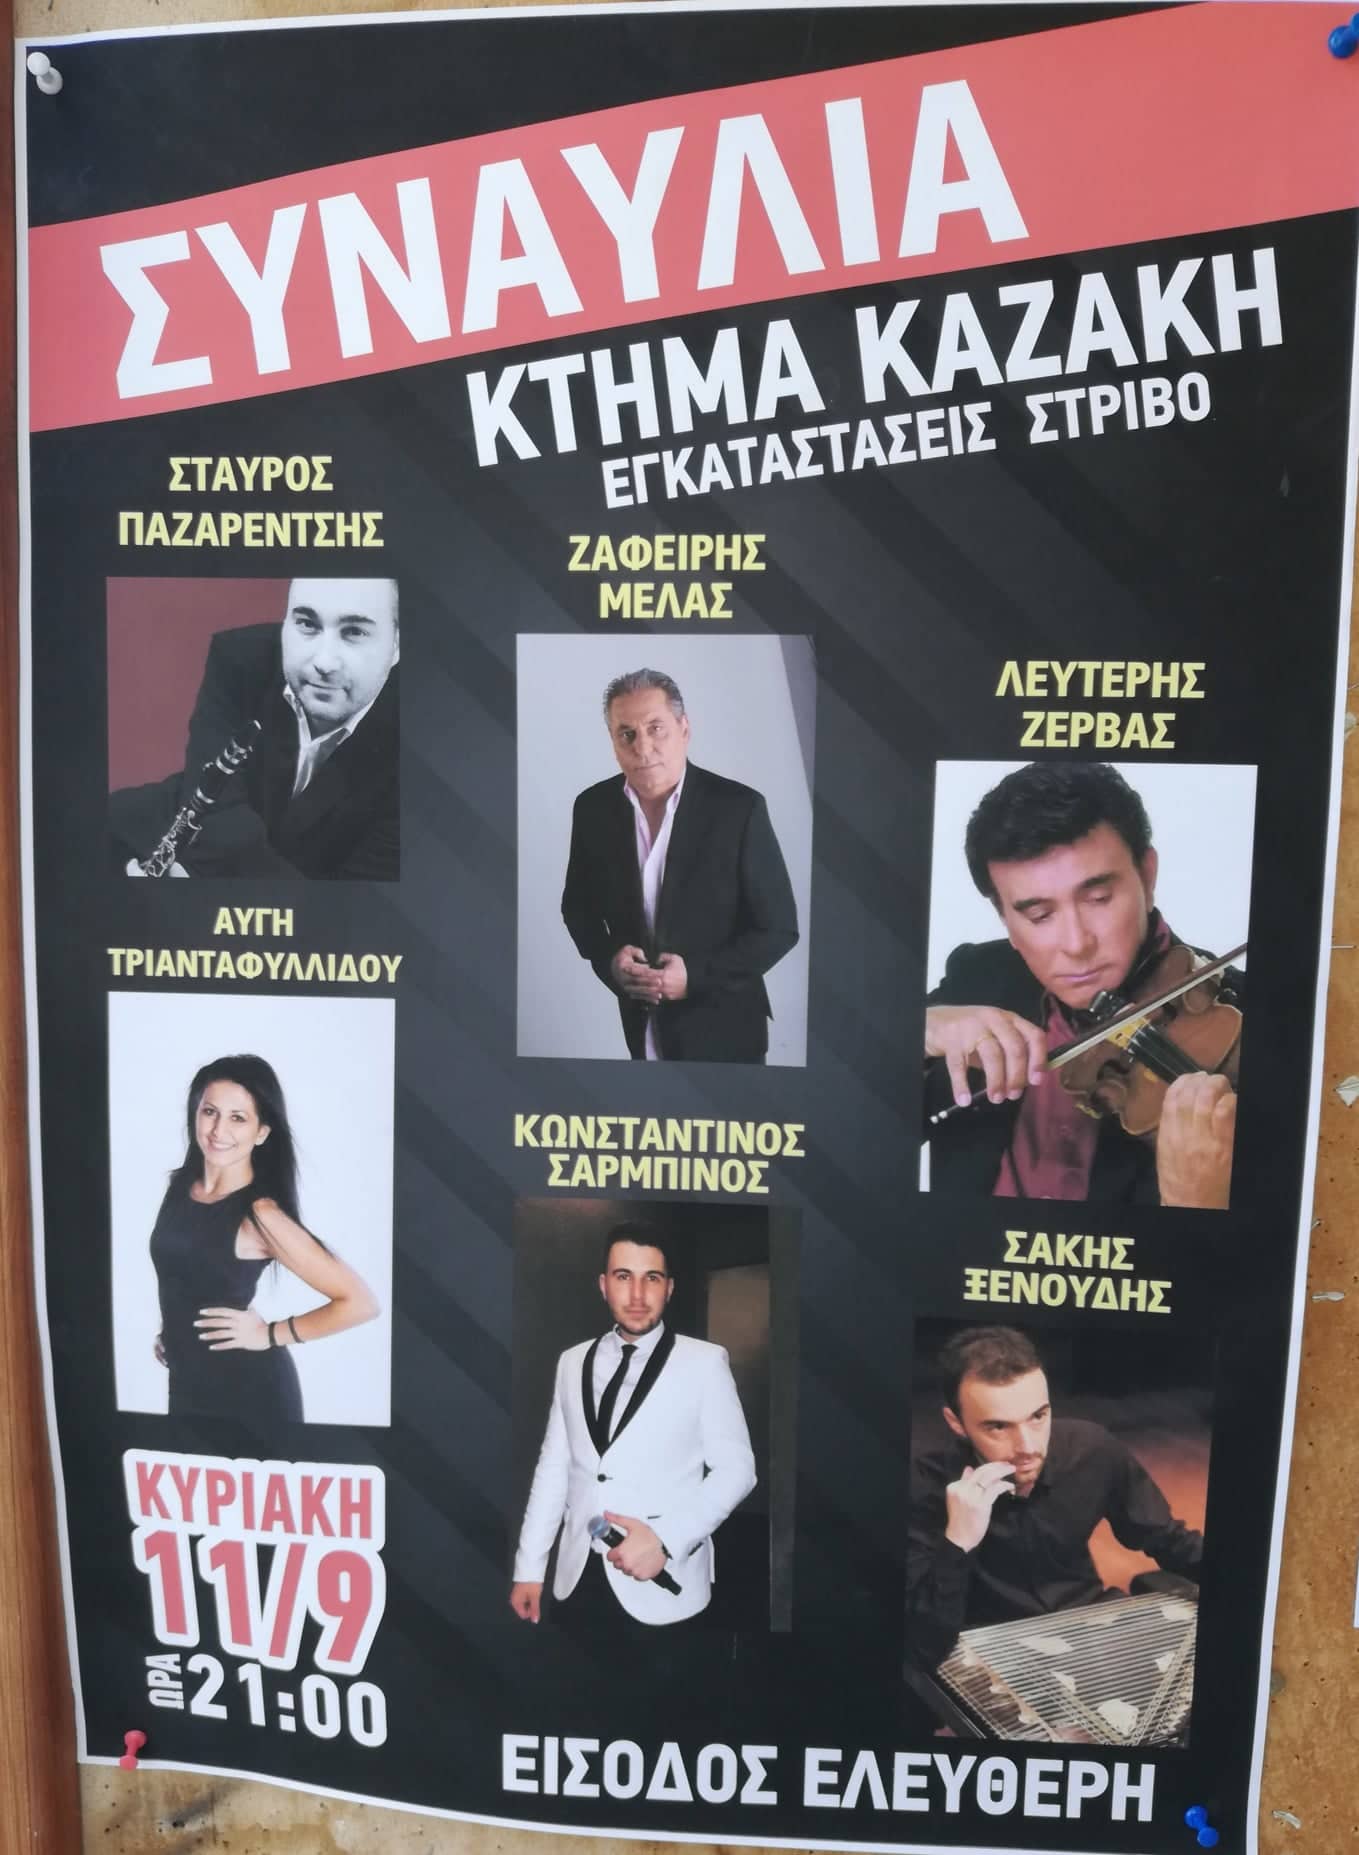 Την επόμενη Κυριακή η συναυλία Καζάκη στην Επανομή!